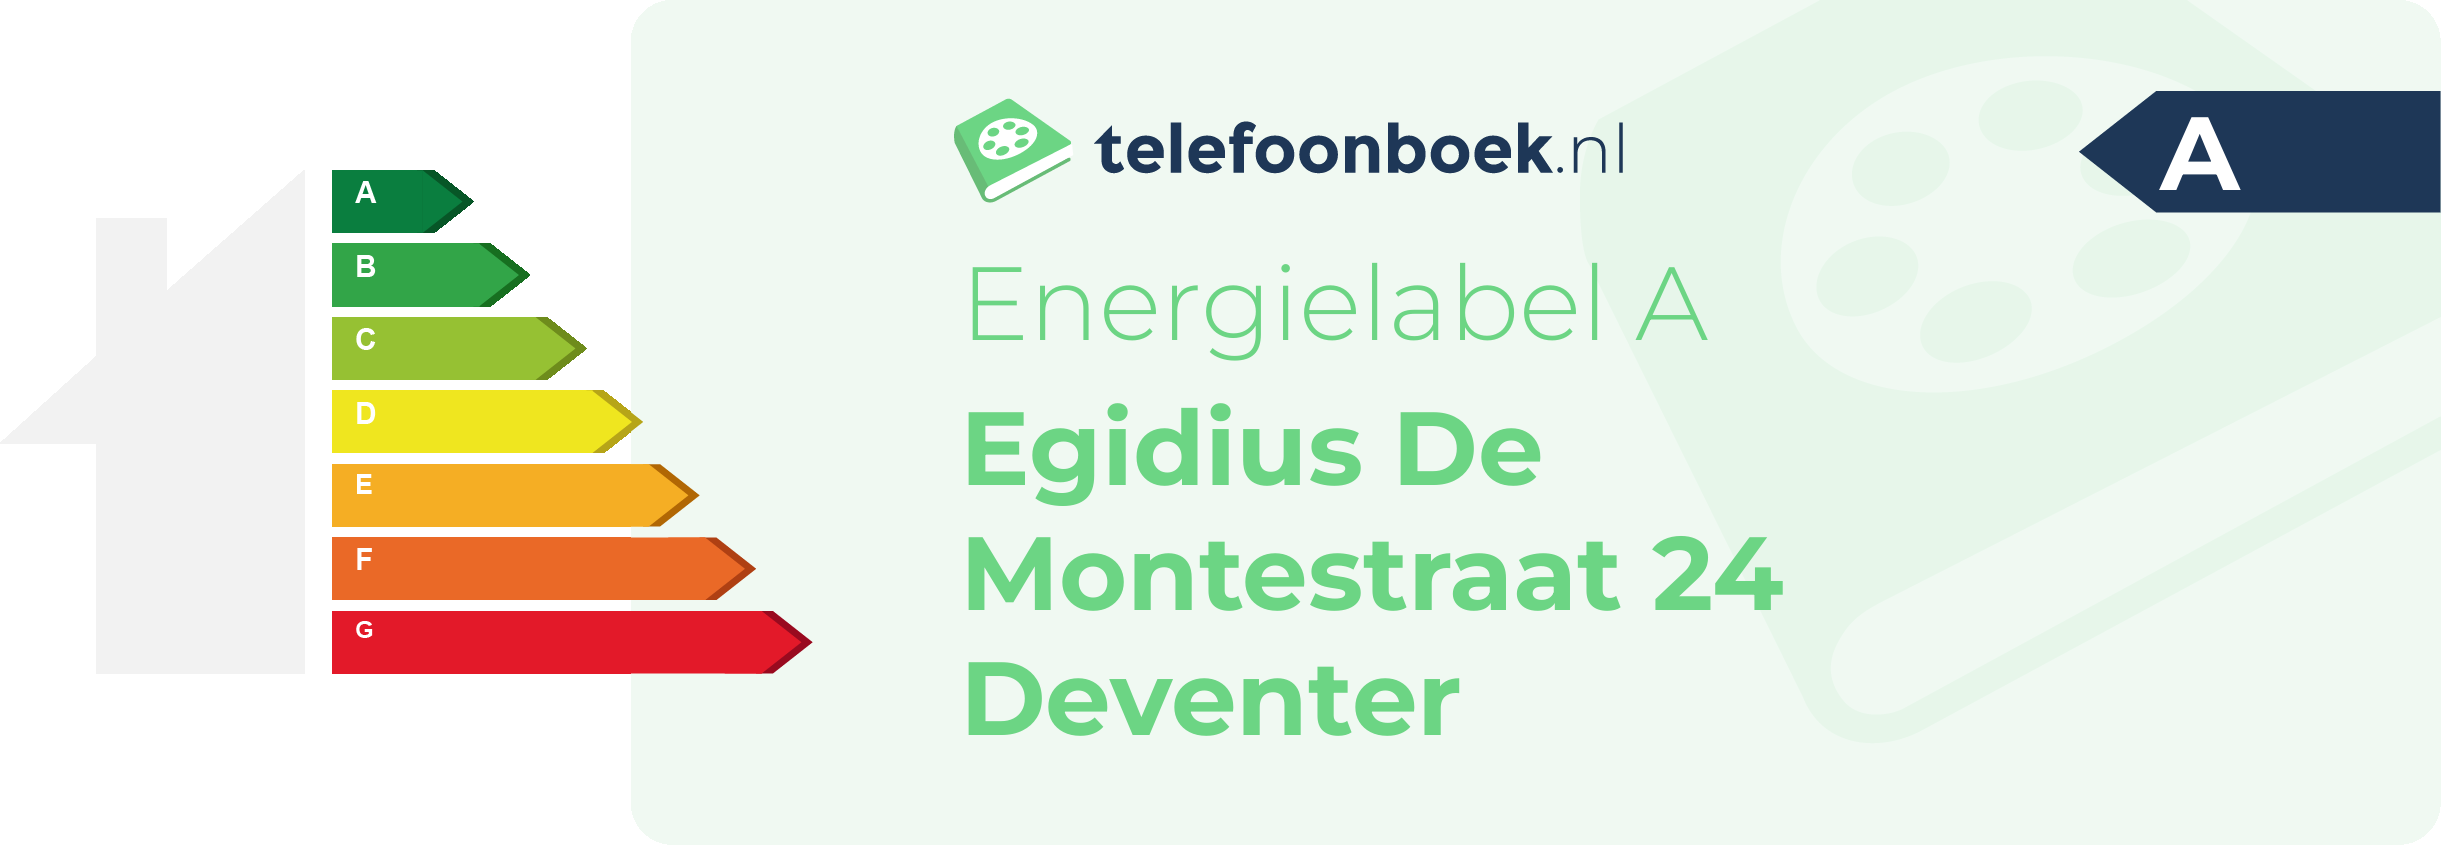 Energielabel Egidius De Montestraat 24 Deventer